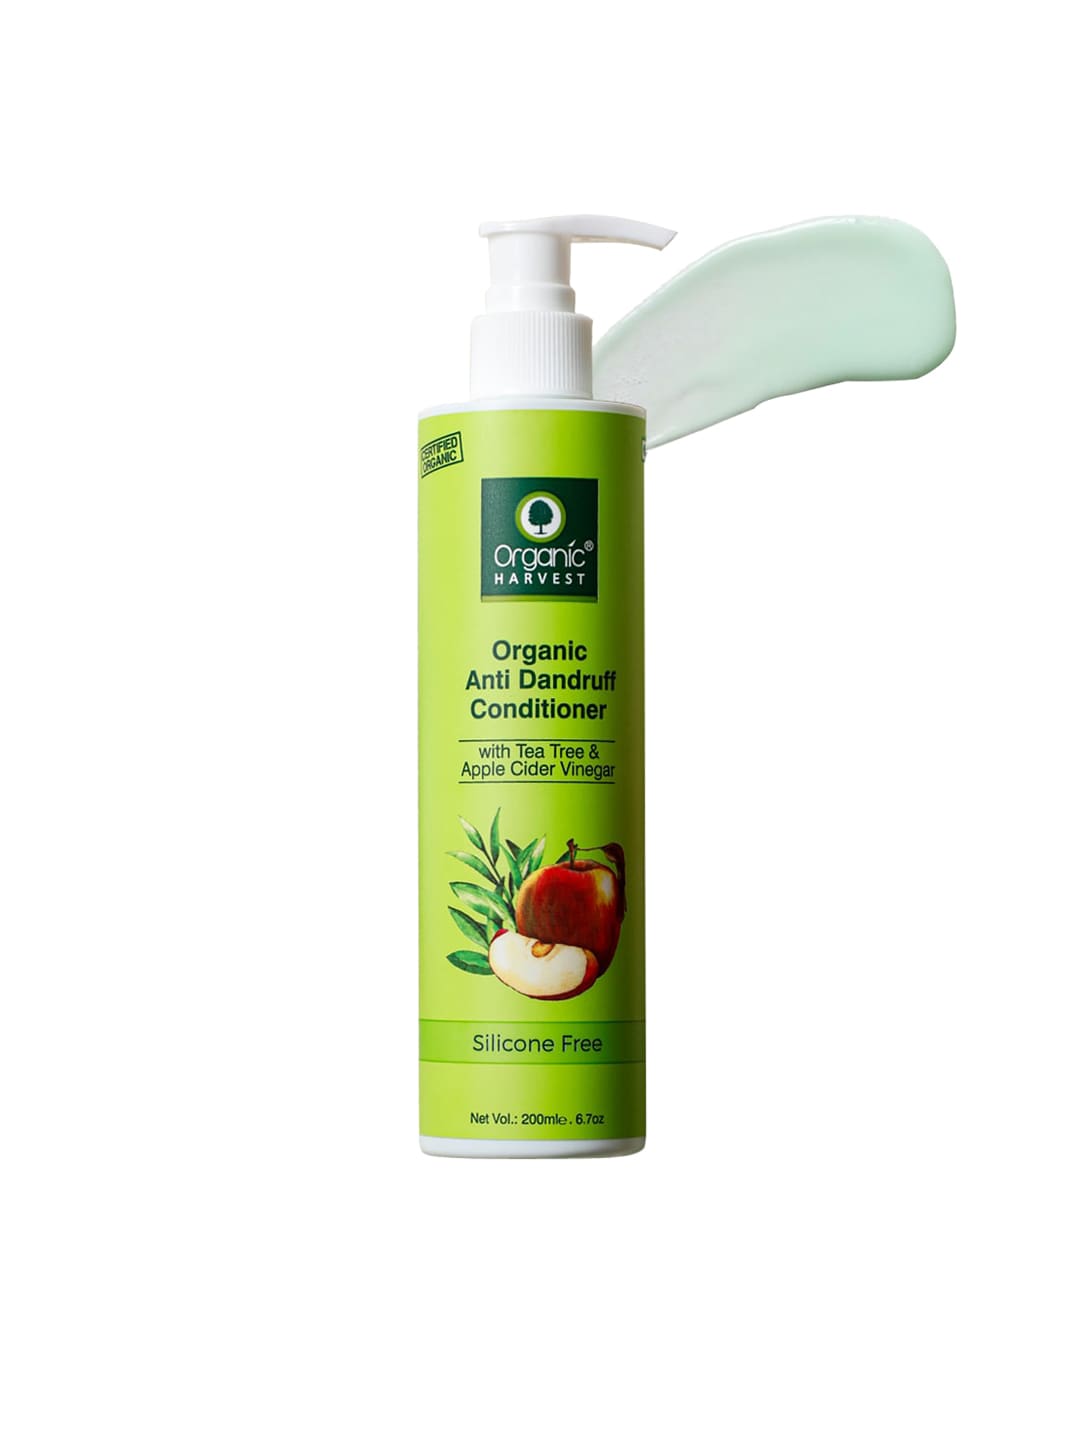 Organic Harvest Apple Cider Vinegar & Tea Tree Oil Anti Dandruff Conditioner - 200 ml Price in India